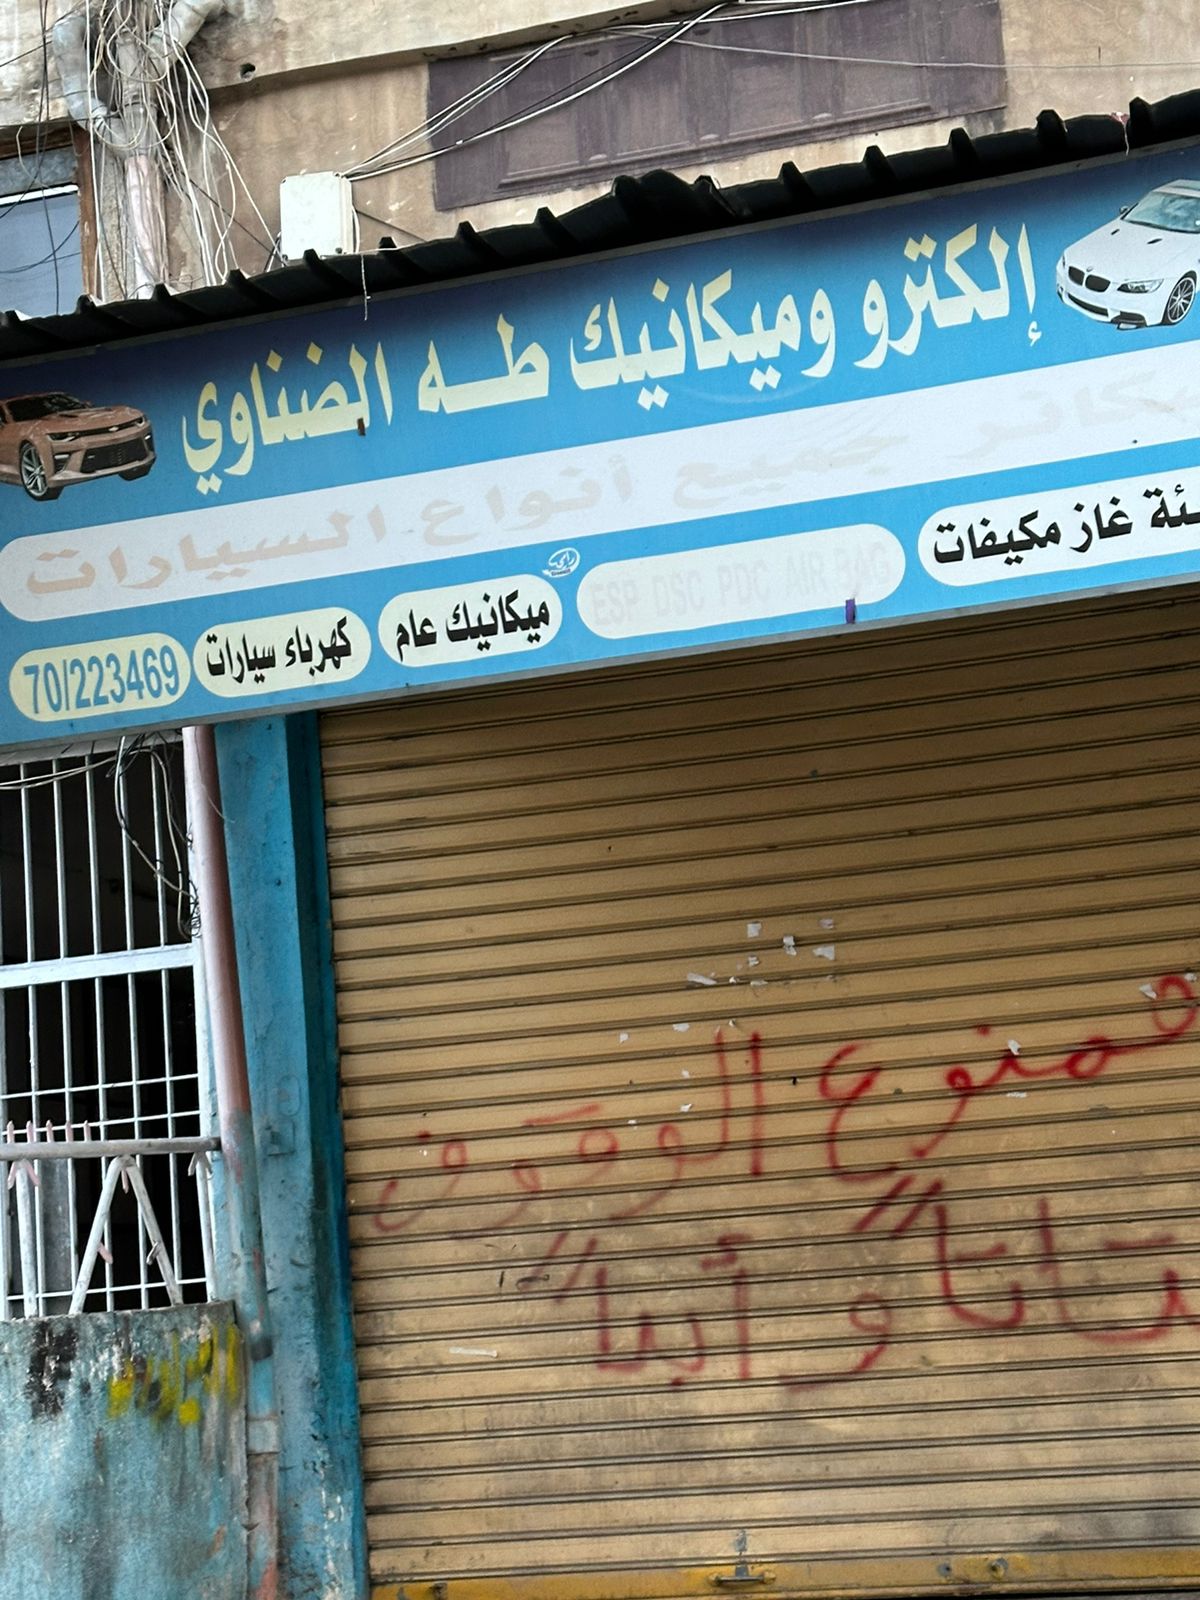 صورة محل المطلوب الفارّ من وجه العدالة طه الضناوي في منطقة باب الرمل على مقربة من سرايا طرابلس